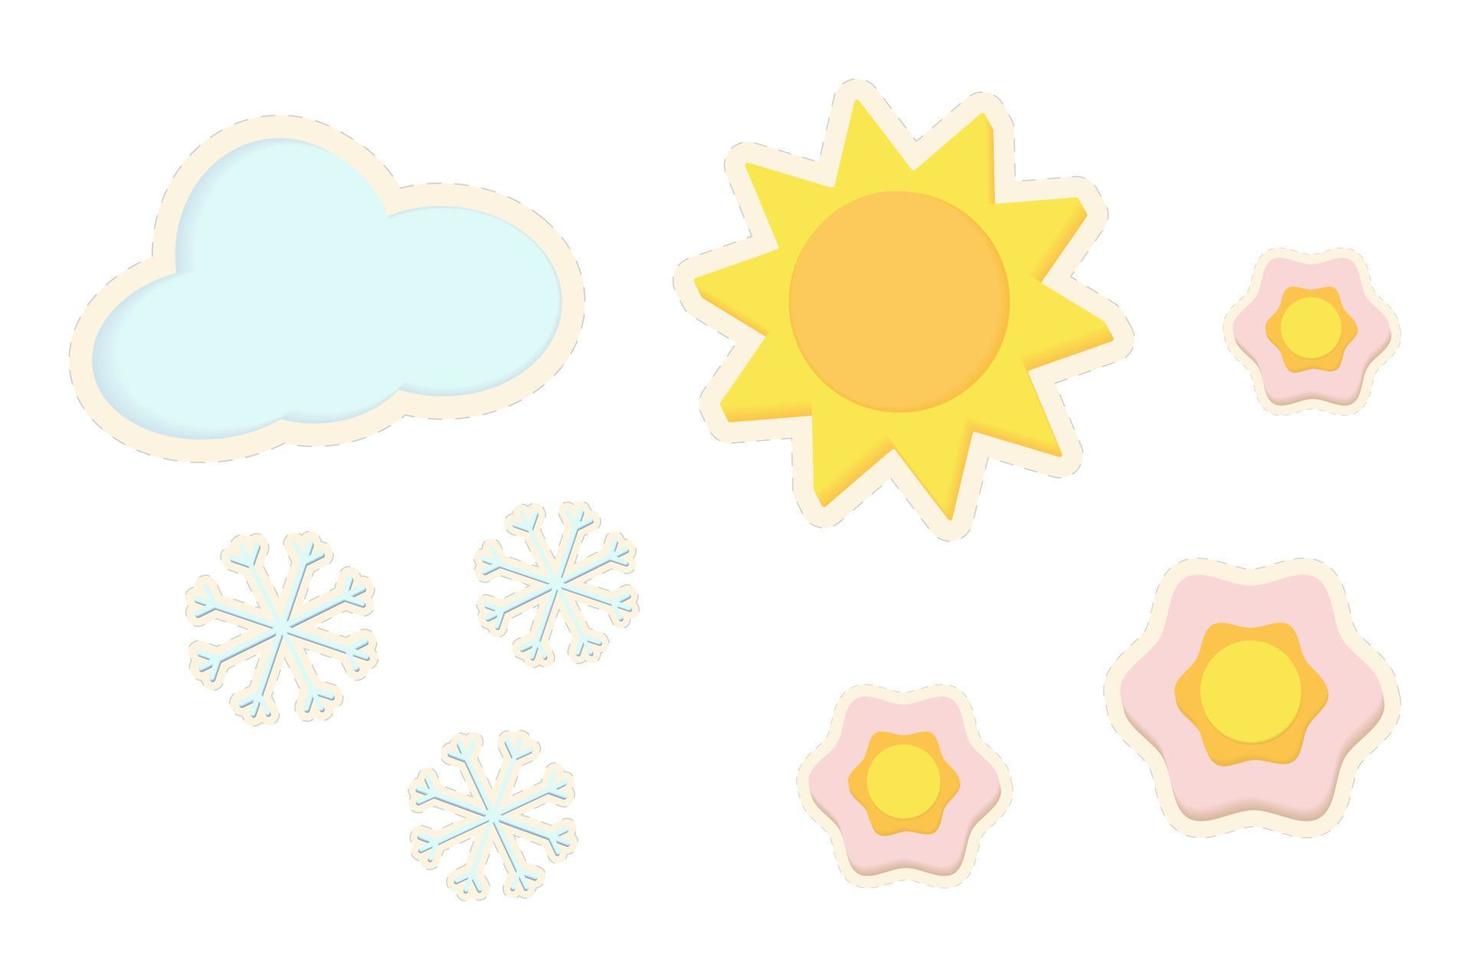 reeks van 3d stickers van de zon met verschillend maten van bloemen en wolk met sneeuwvlokken. sticker vector